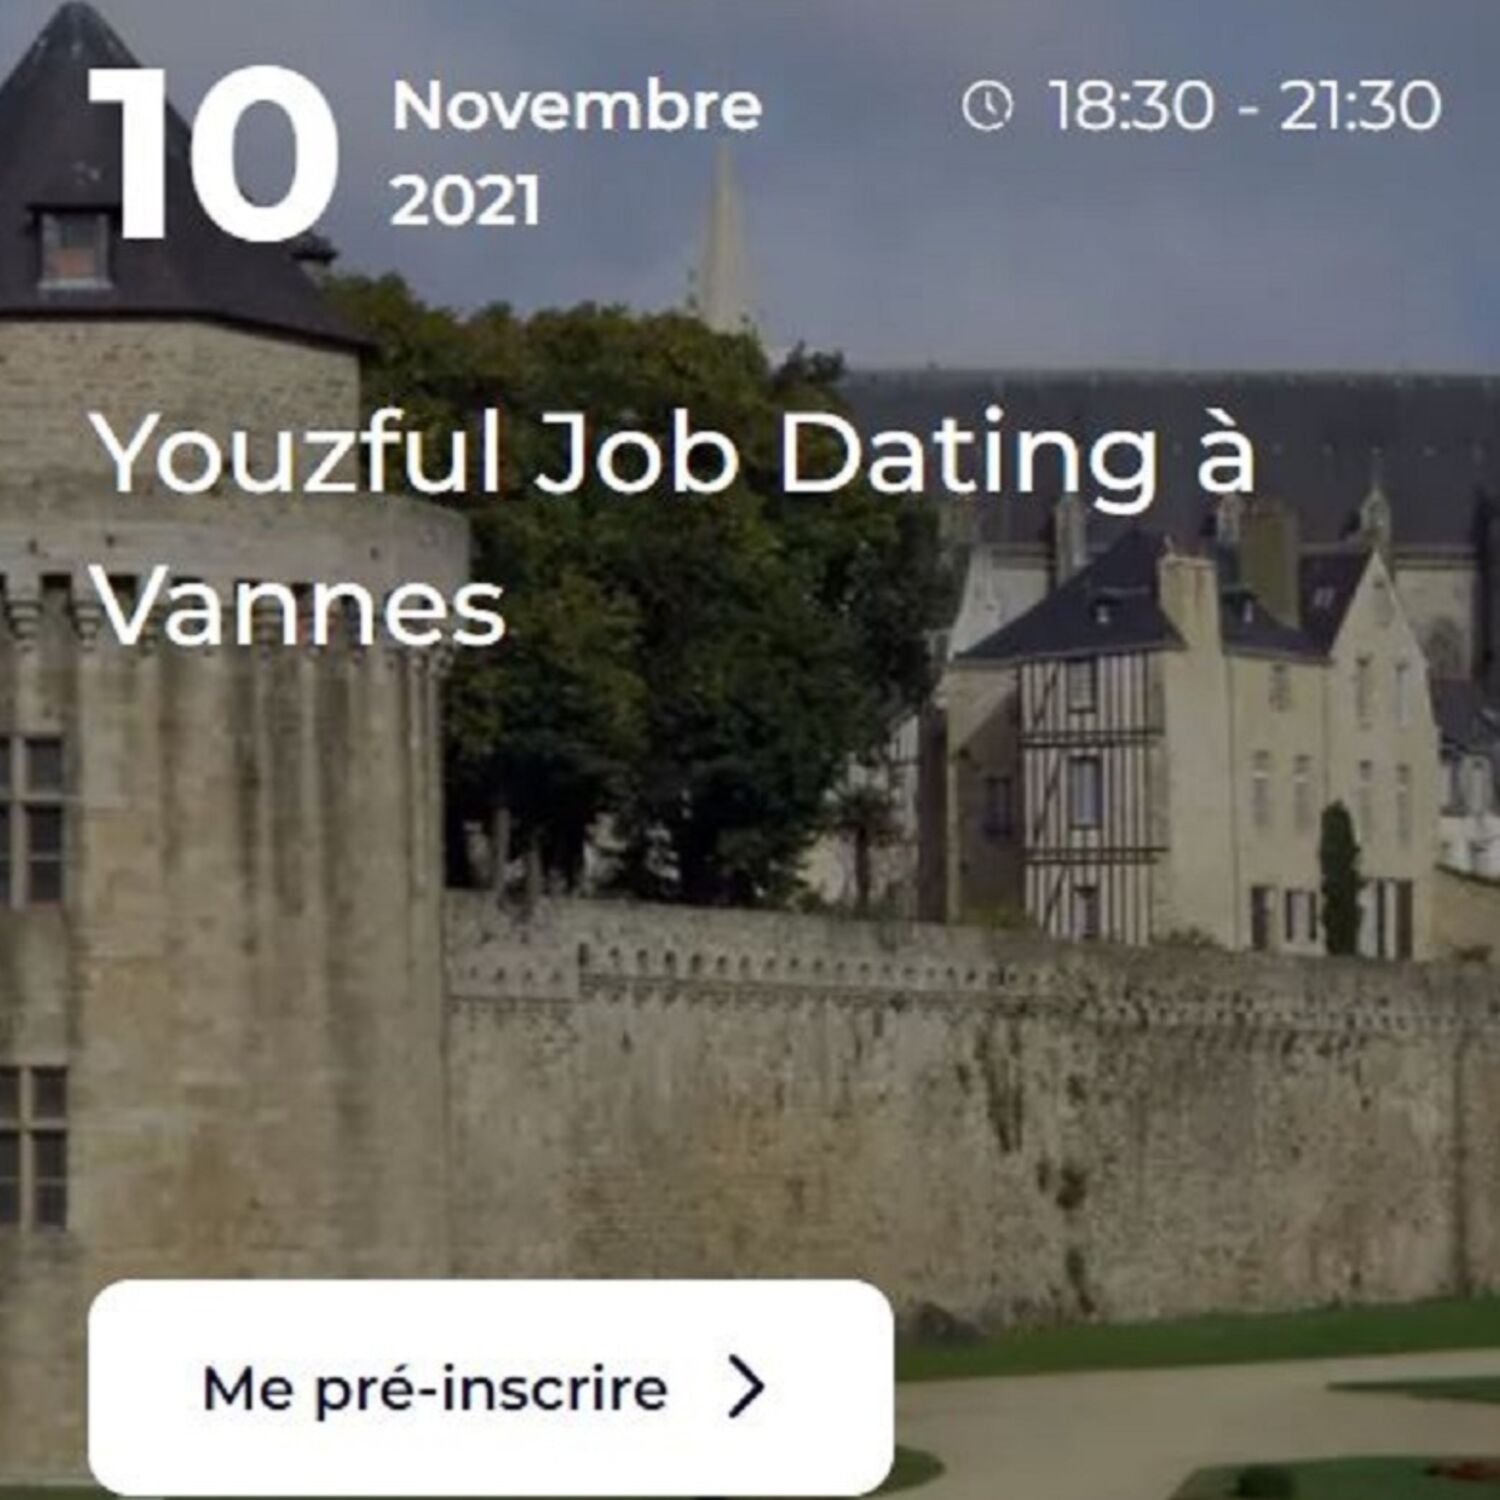 Job Dating à Vannes et Brest cette semaine pour les jeunes de 16 à 30 ans !